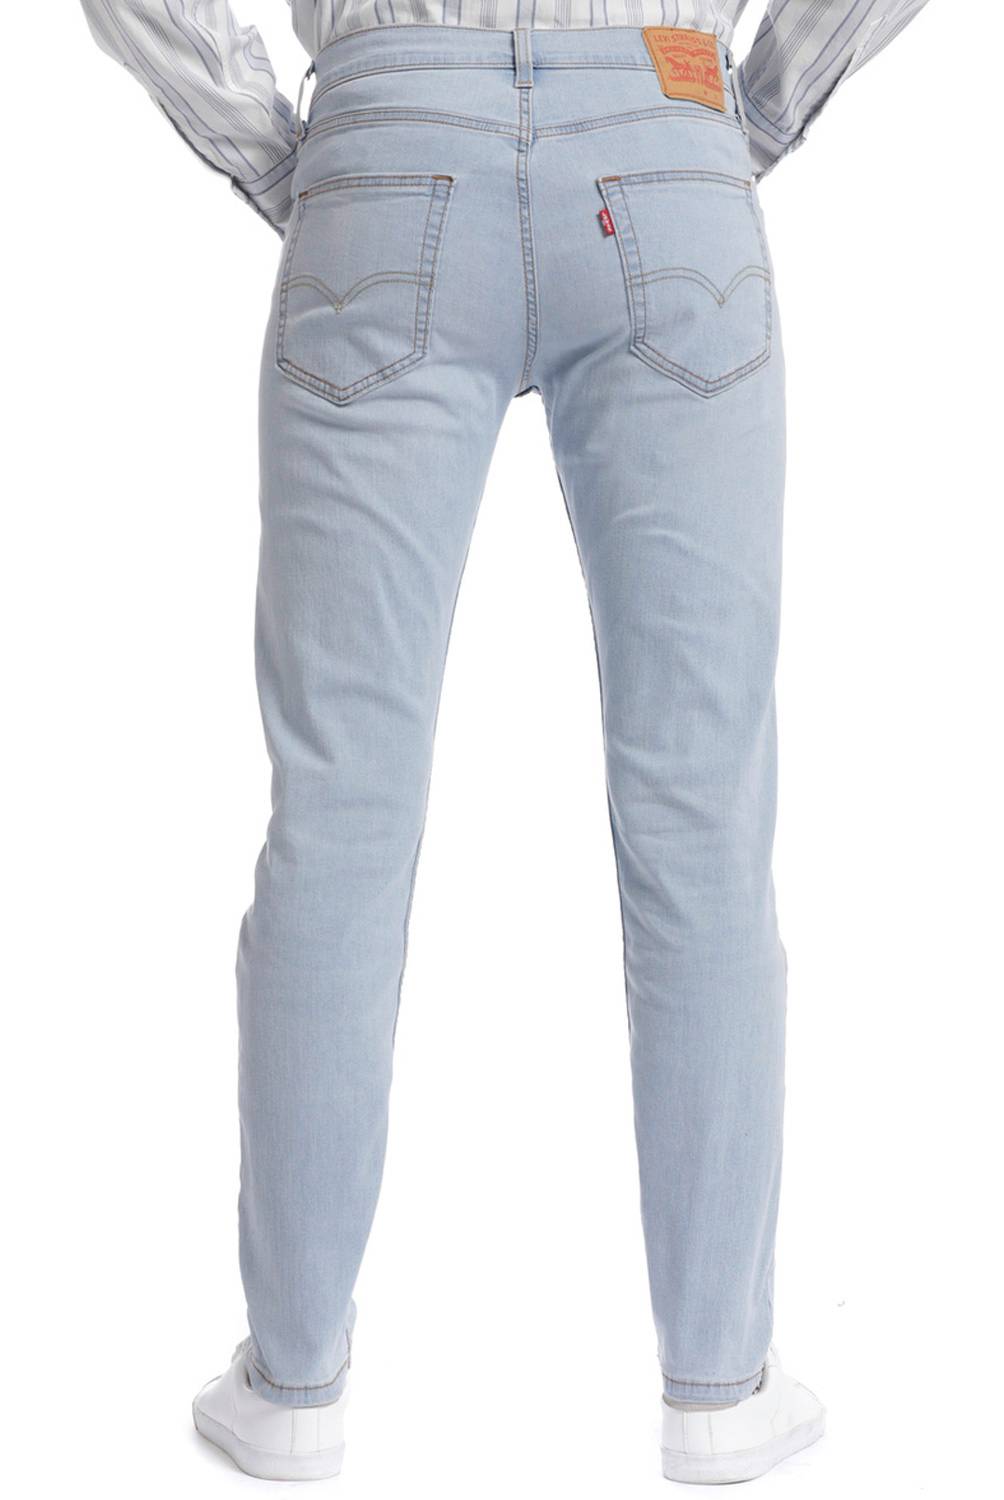 LEVIS - Jeans 512 Hombre